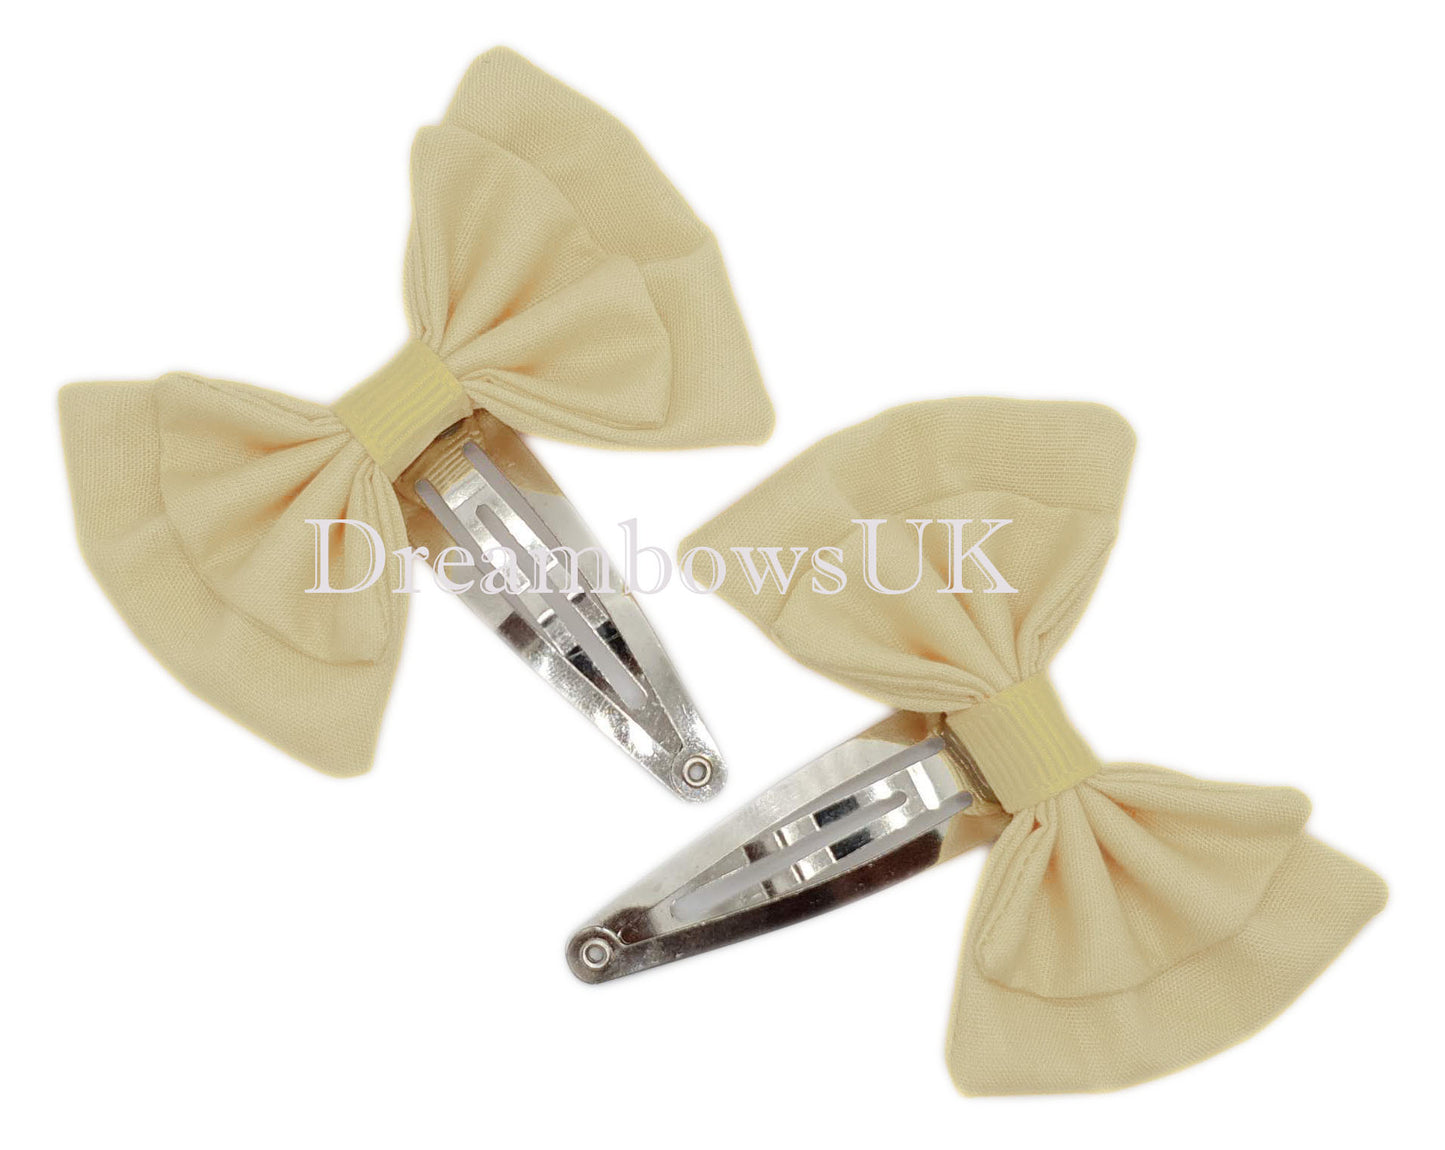 2x Cream/ivory fabric hair bows